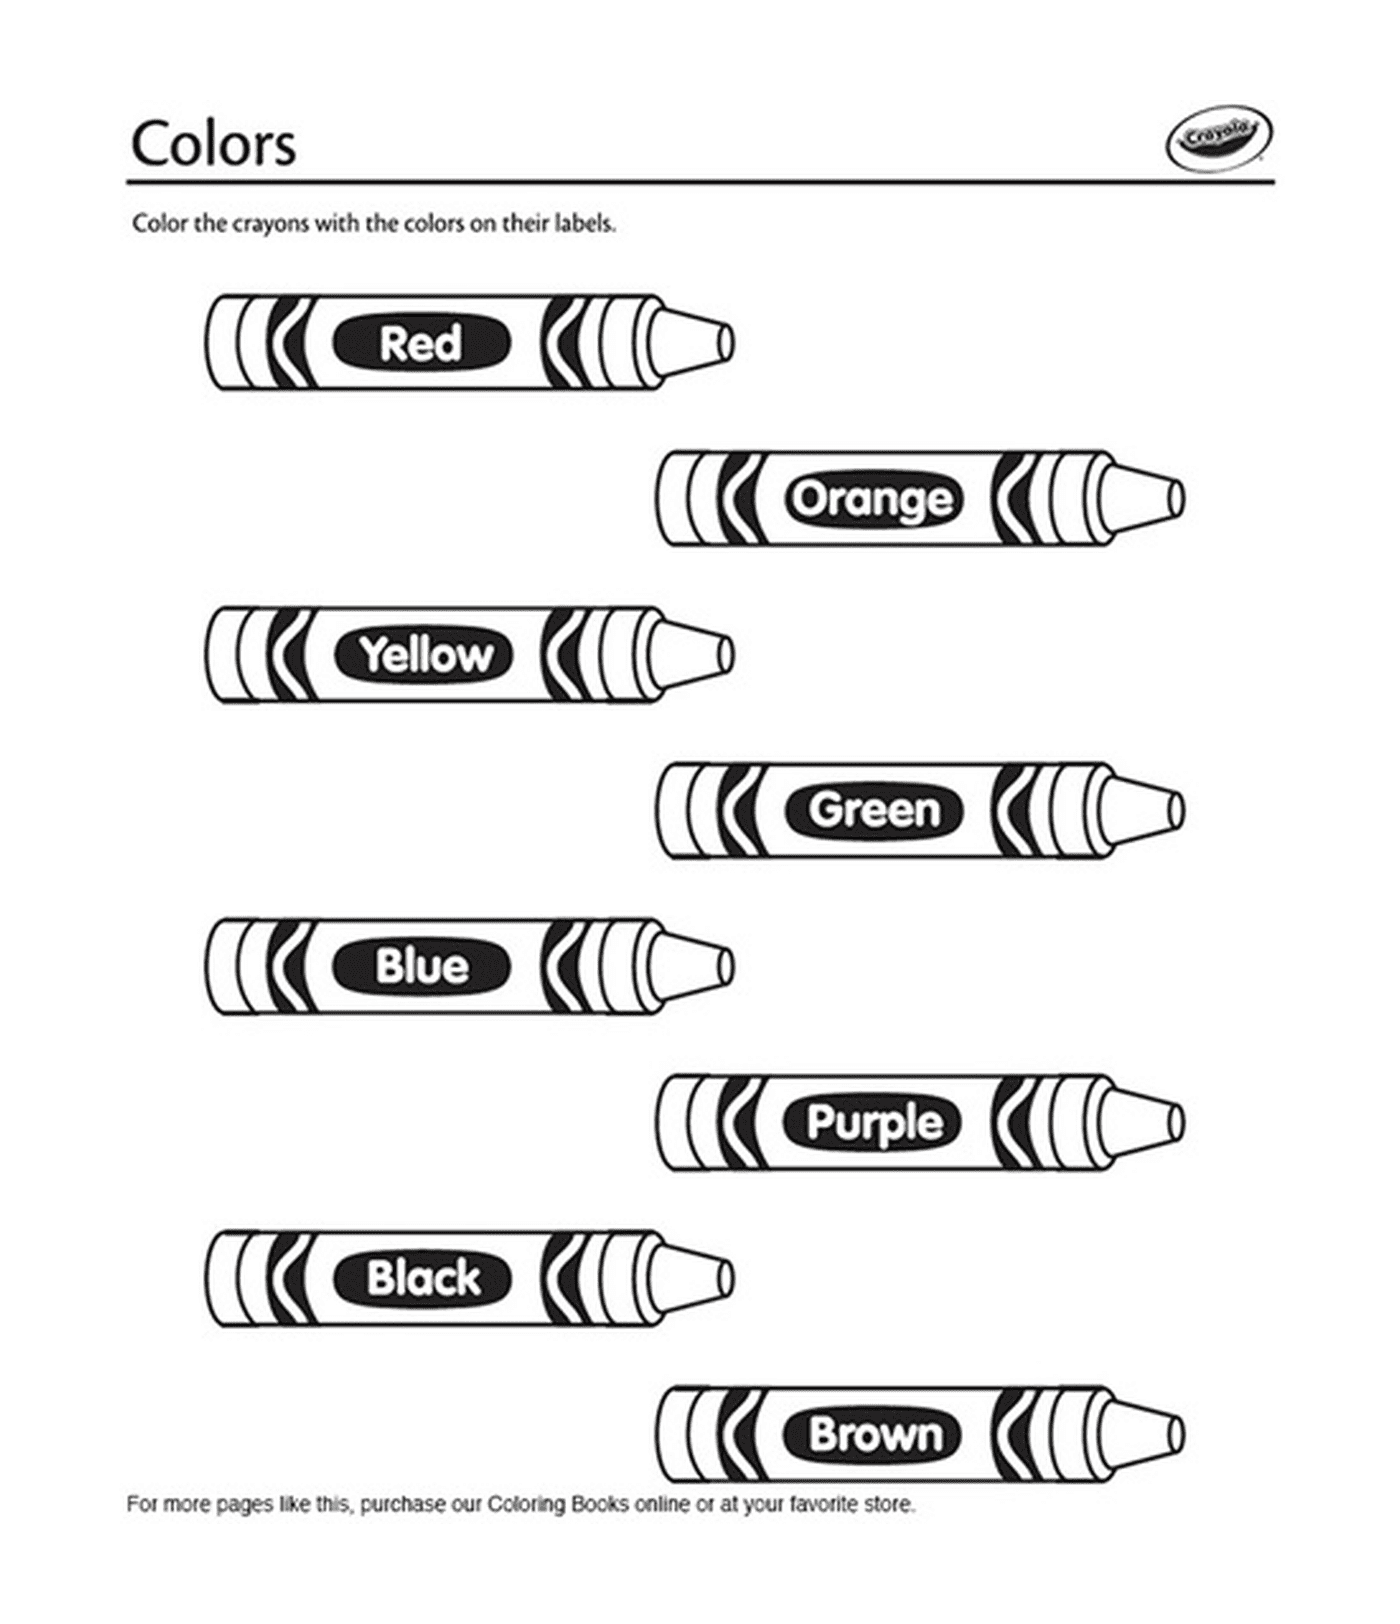 coloriage crayons de couleurs en anglais crayola